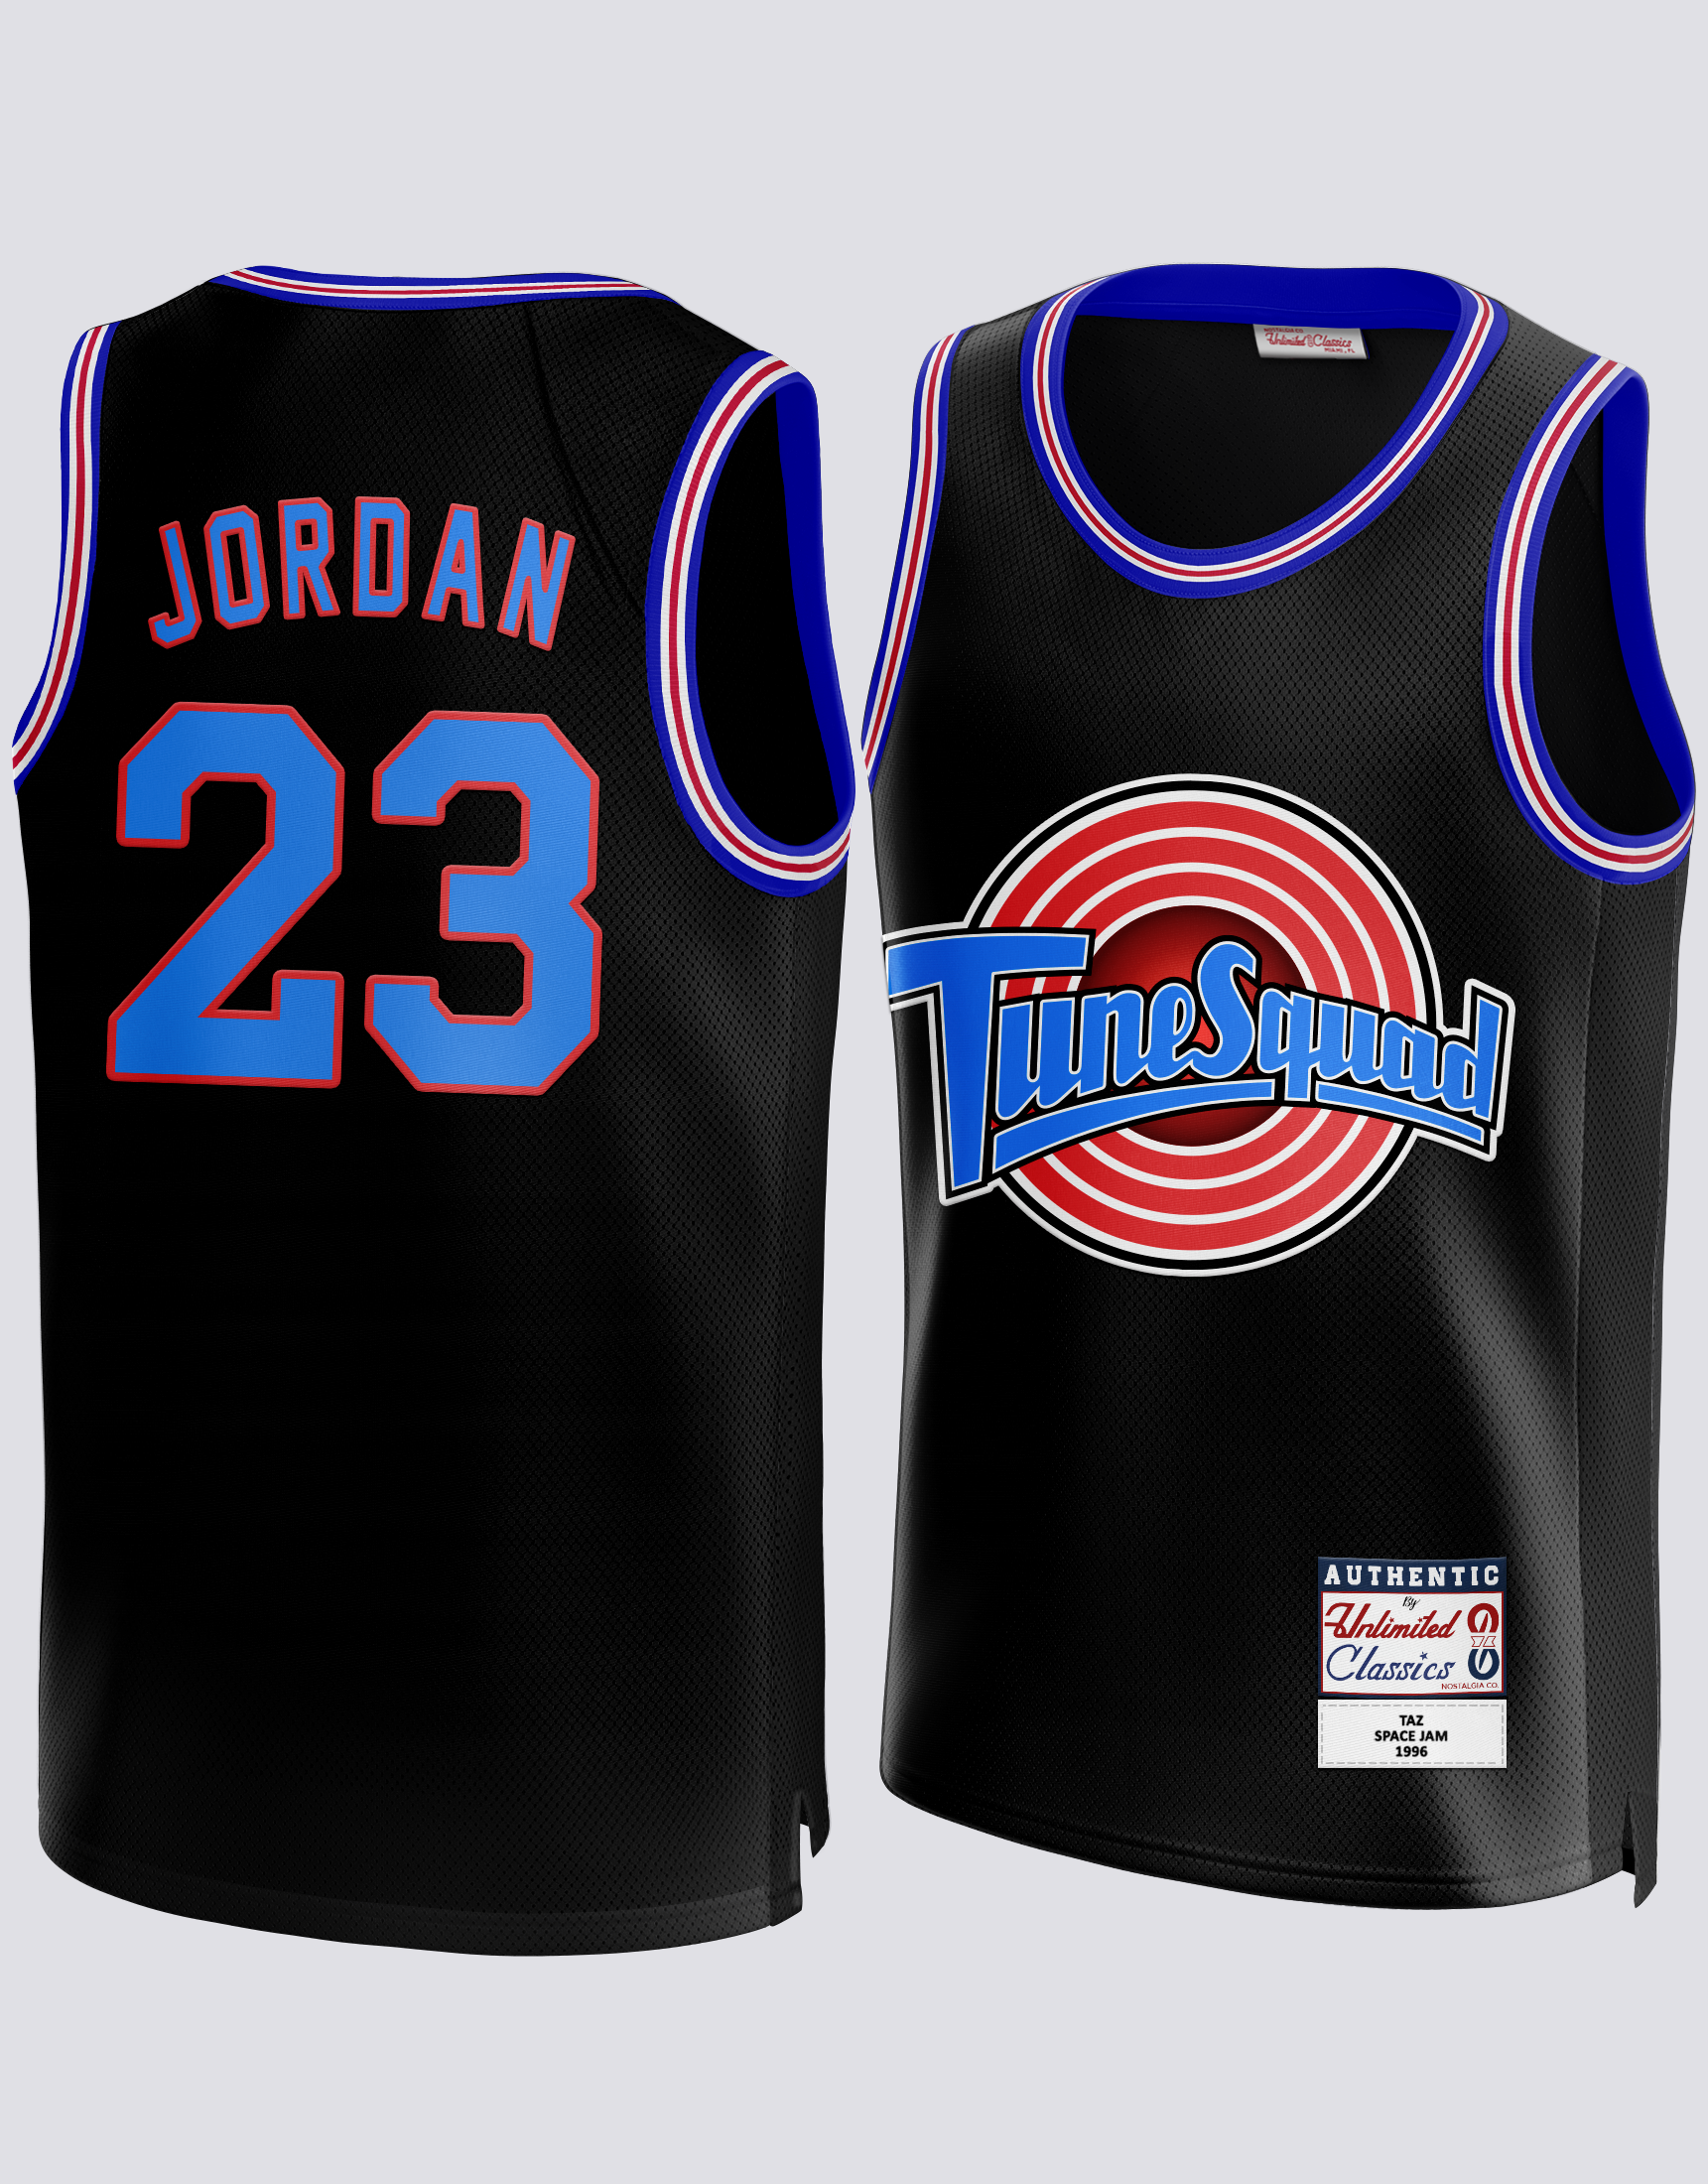 Neerduwen Veilig Alternatief Buy #23 Jordan Space Jam Tune Squad Looney Tunes Black Basketball Jersey –  unlimitedsportshop